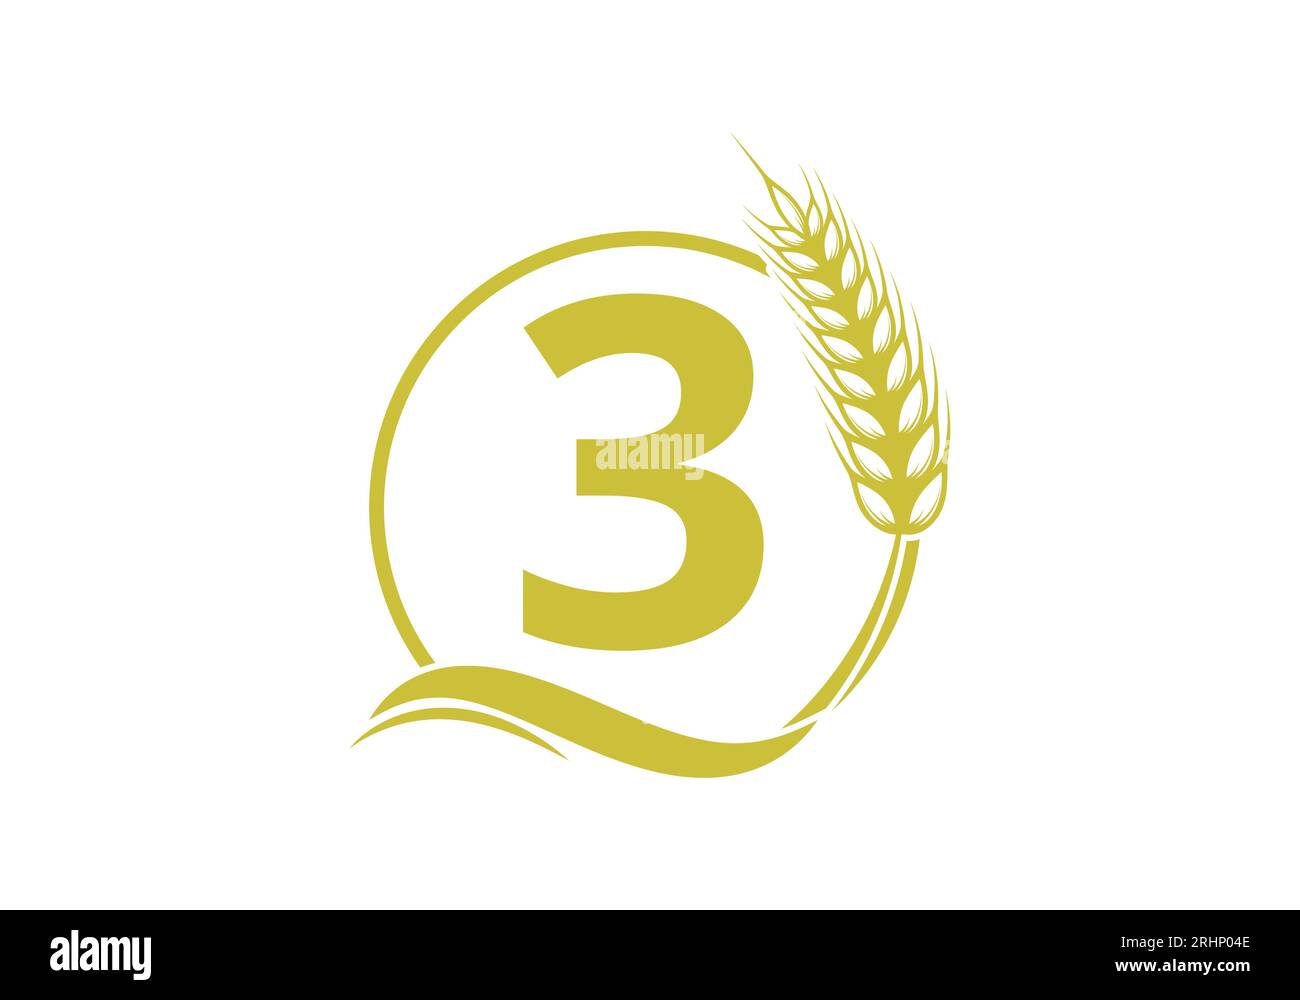 Zeichen des Buchstabens 3 mit Weizenohrkranz. Landwirtschafts-Logo Landwirtschafts-Vorlage Vektorsymbol Stock Vektor